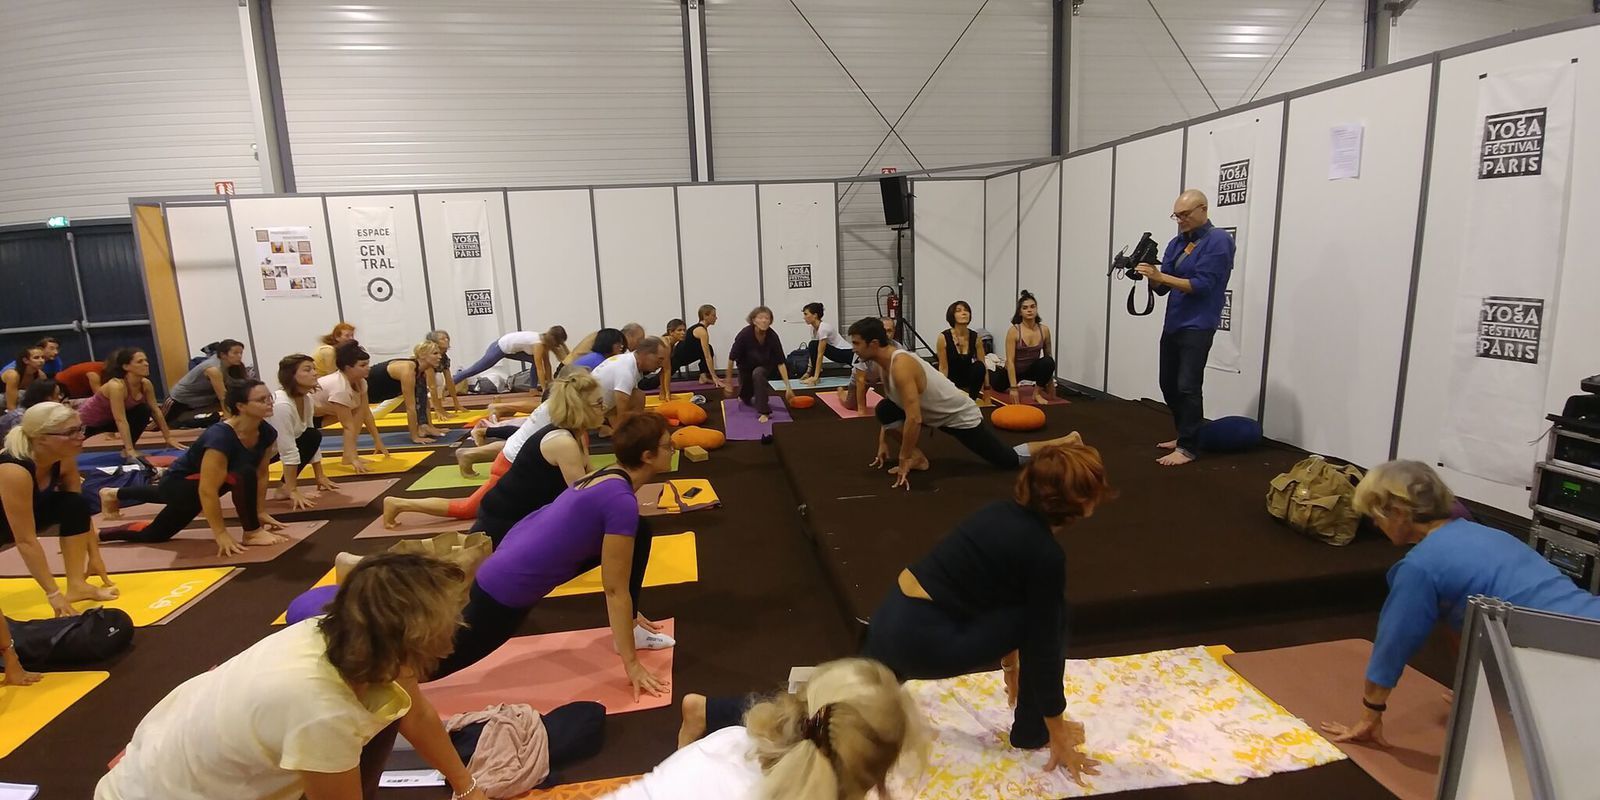 Pourquoi j'ai aimé le yoga festival Paris 